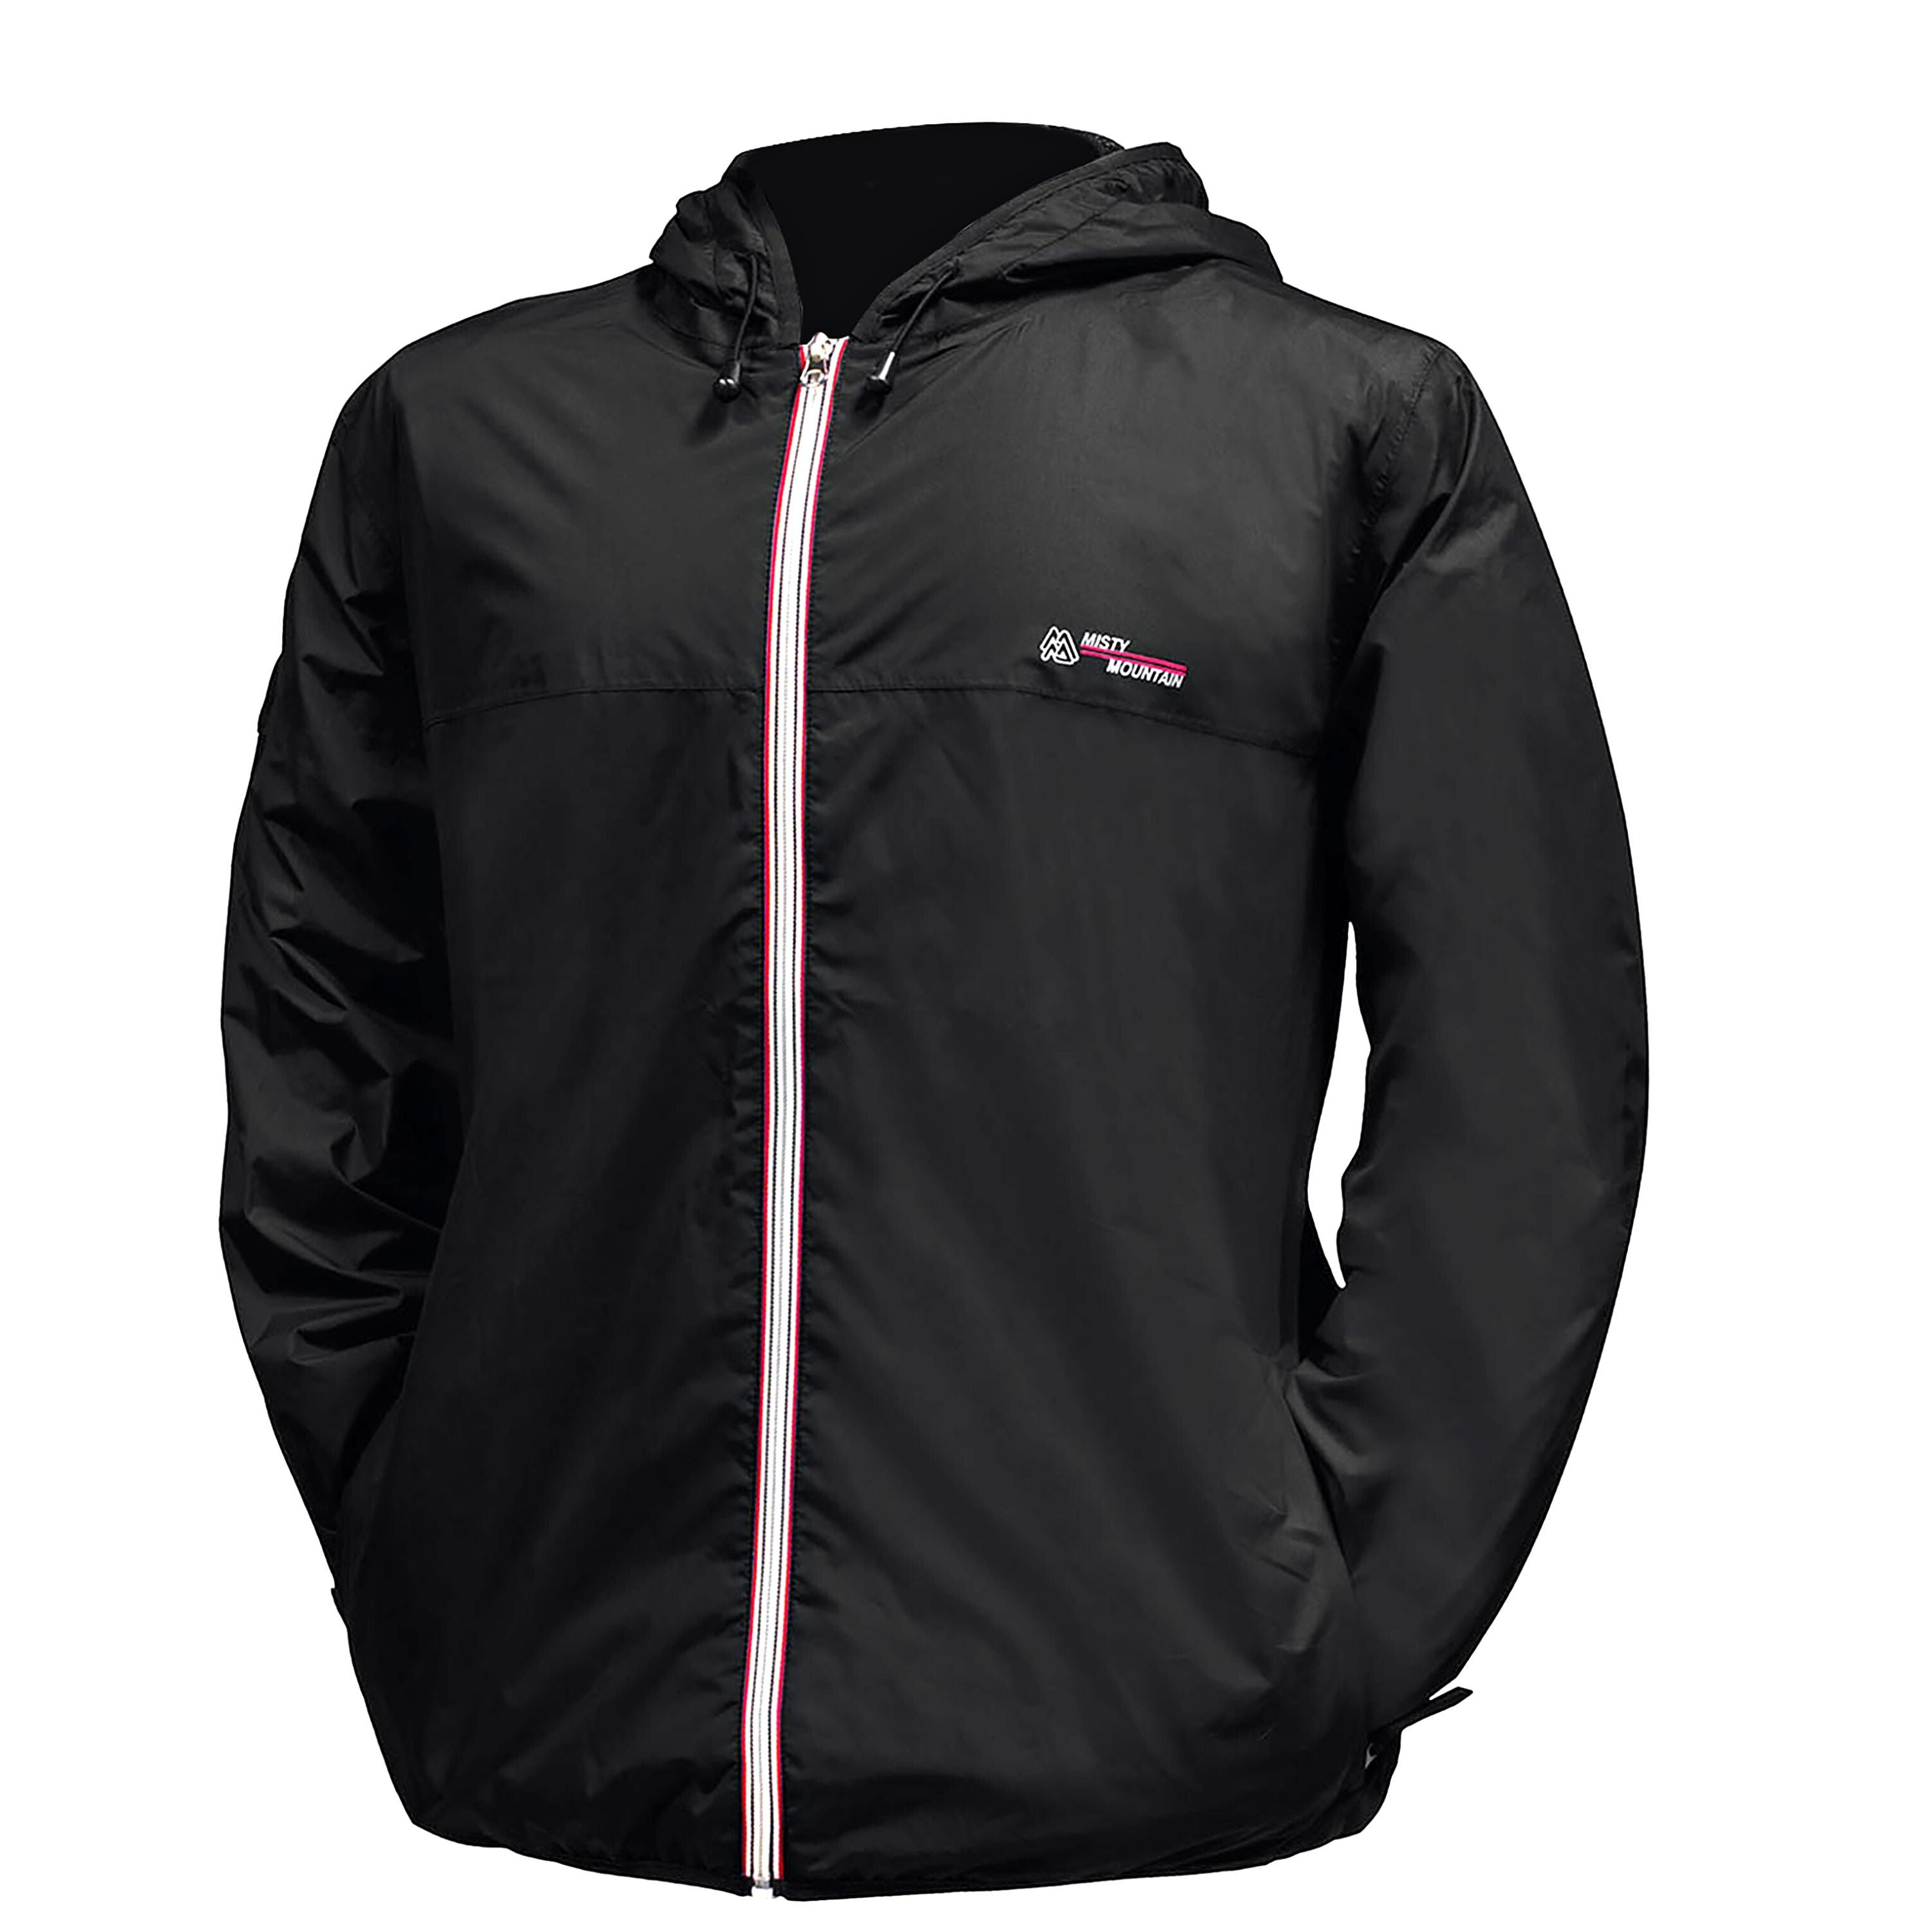 Manteau coupe-vent imperméable “Breeze” - Homme||“Breeze” windproof rain jacket - Men's